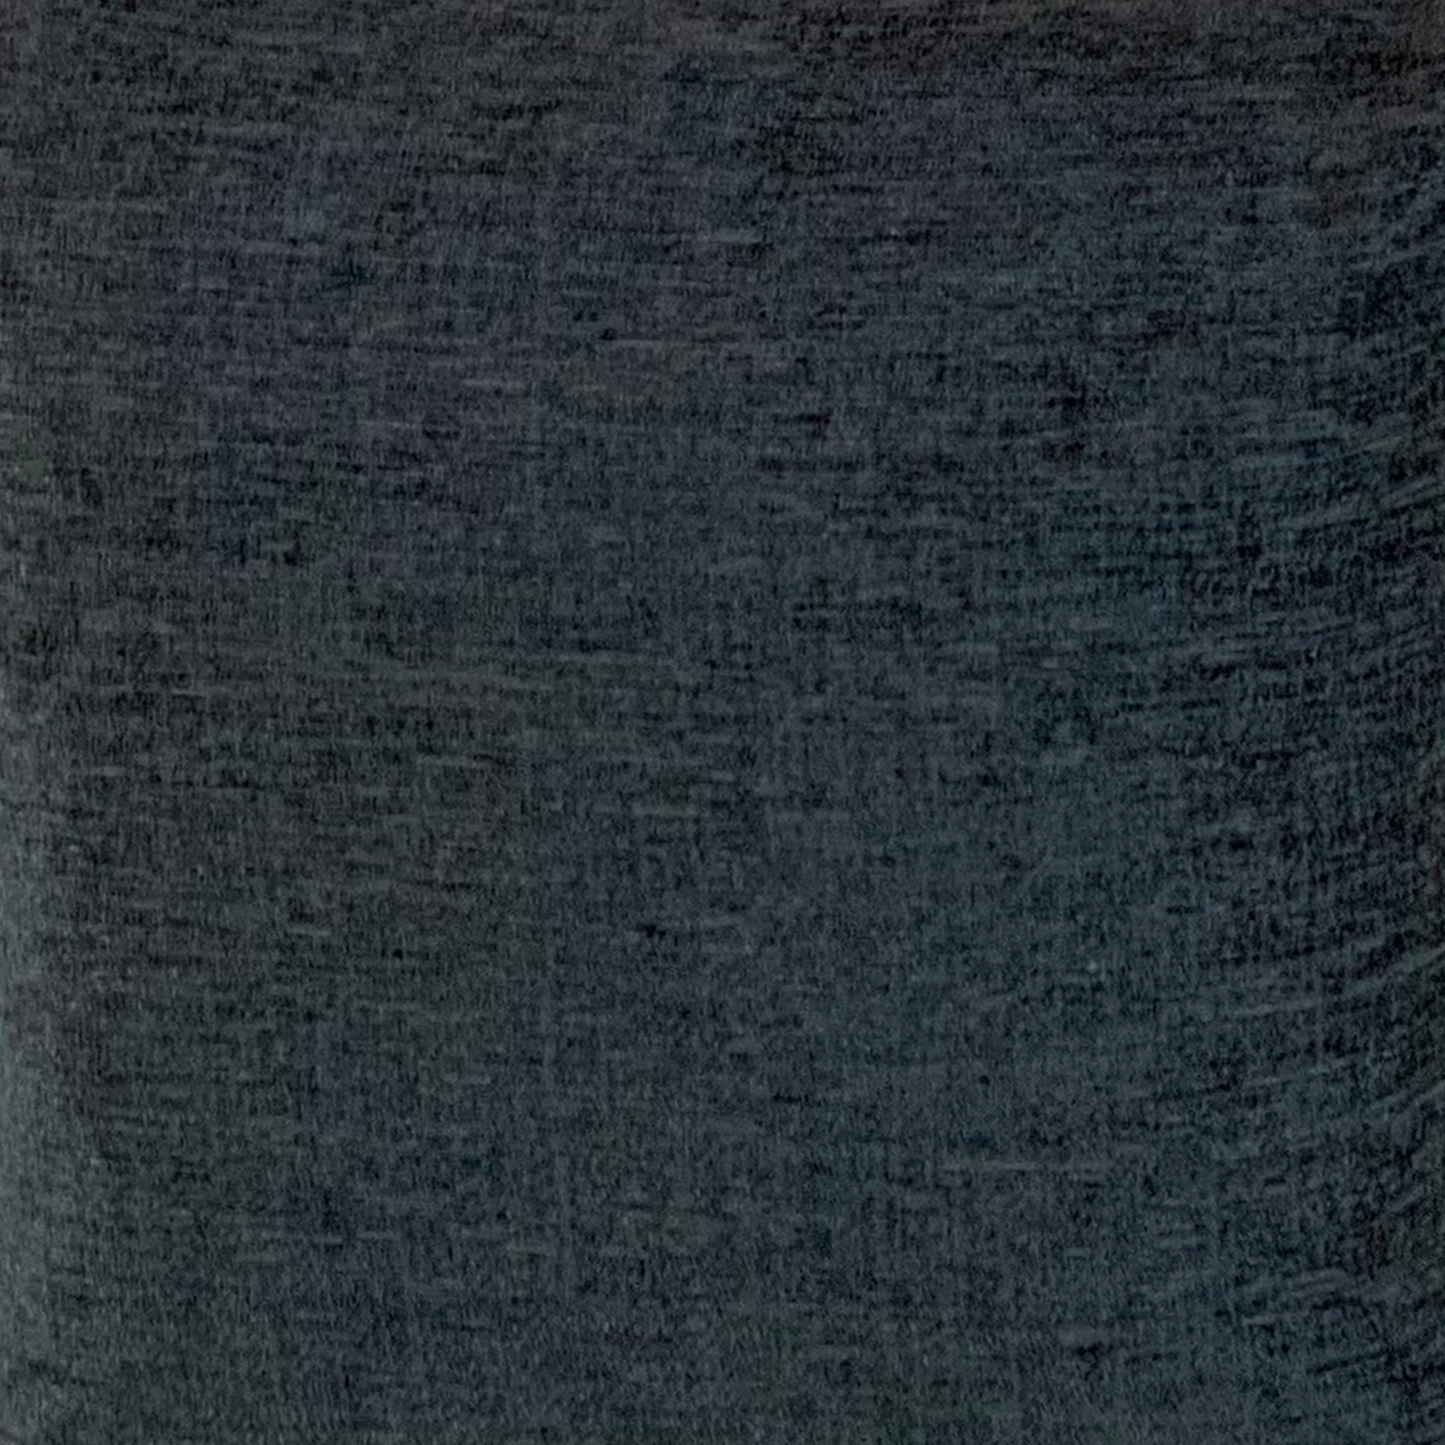 Handmade Elite Chenille Bed Runner Throw Shimmer Home Decor Sofa Cover Blanket